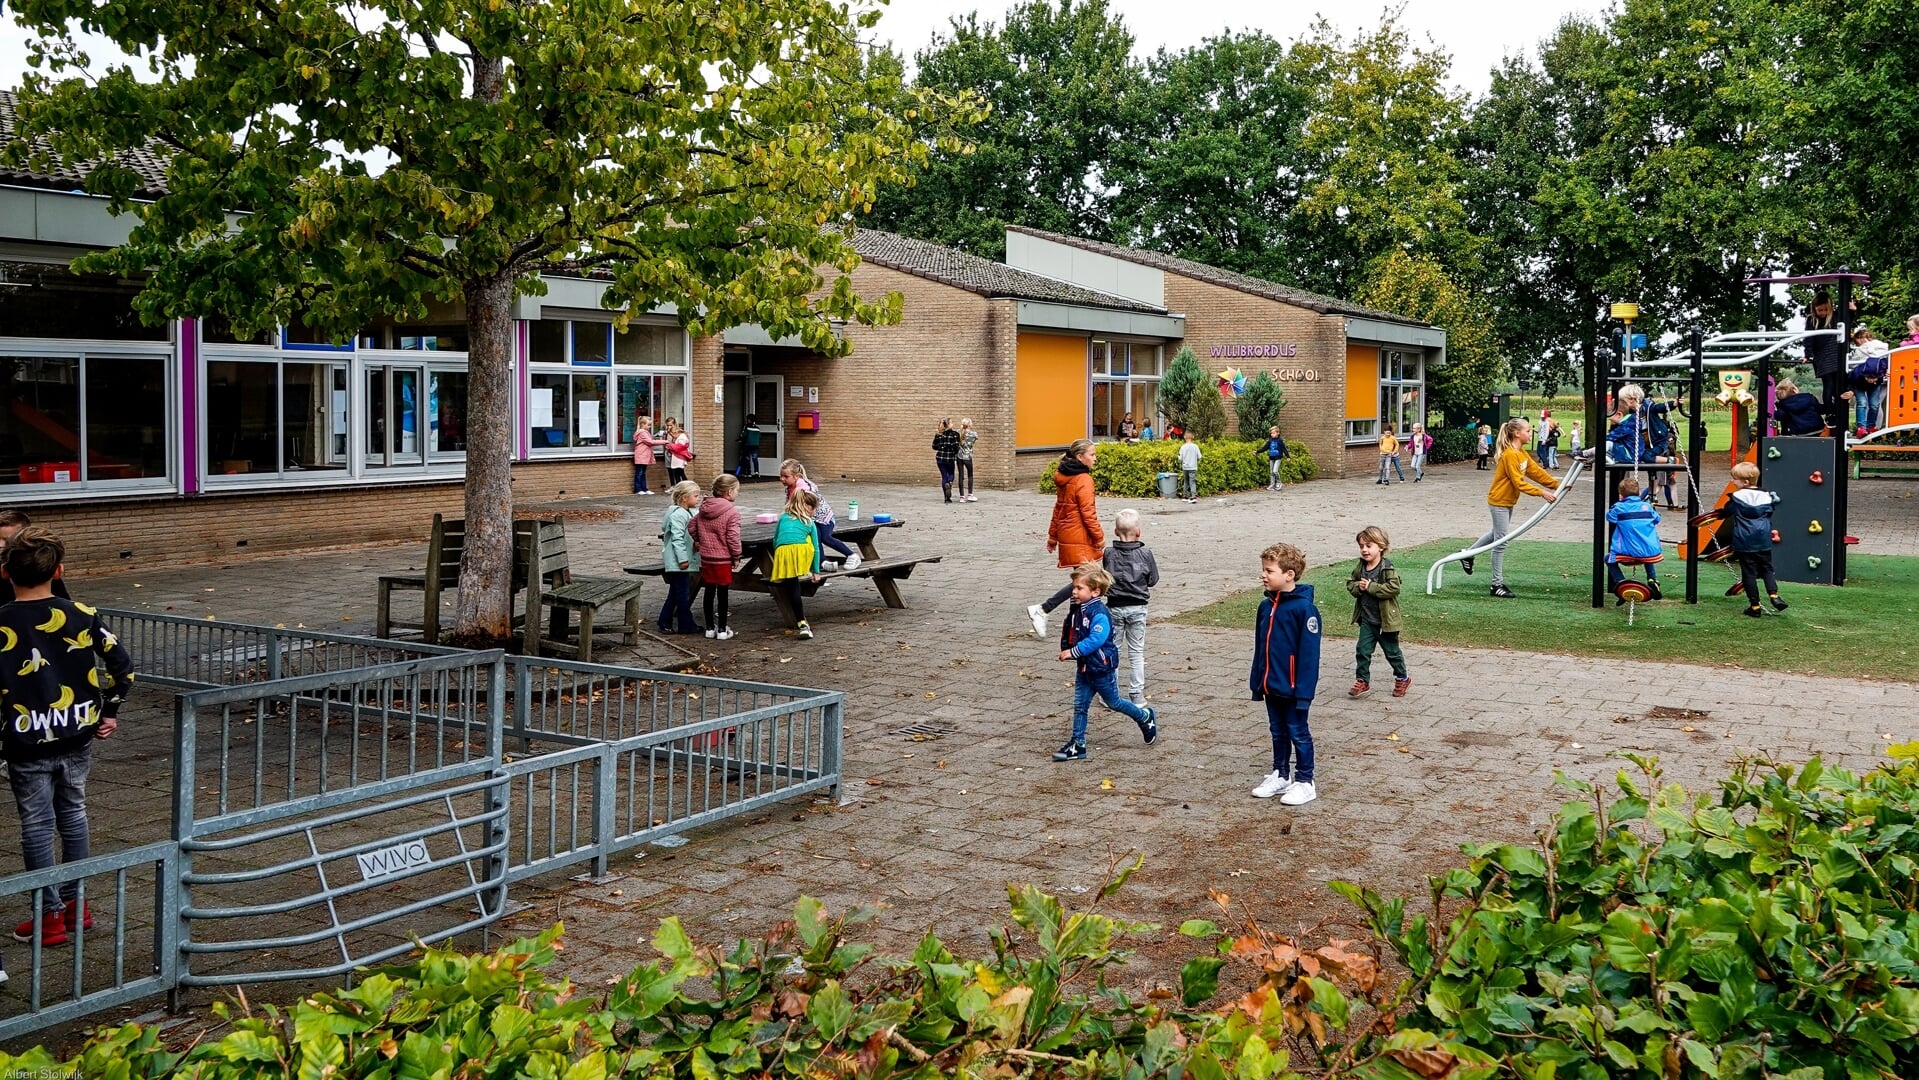 De Willibrordusschool in Esch is aan vernieuwing toe. Over nieuwbouw of renovatie wordt al lang gediscussieerd. (Foto: Albert Stolwijk).